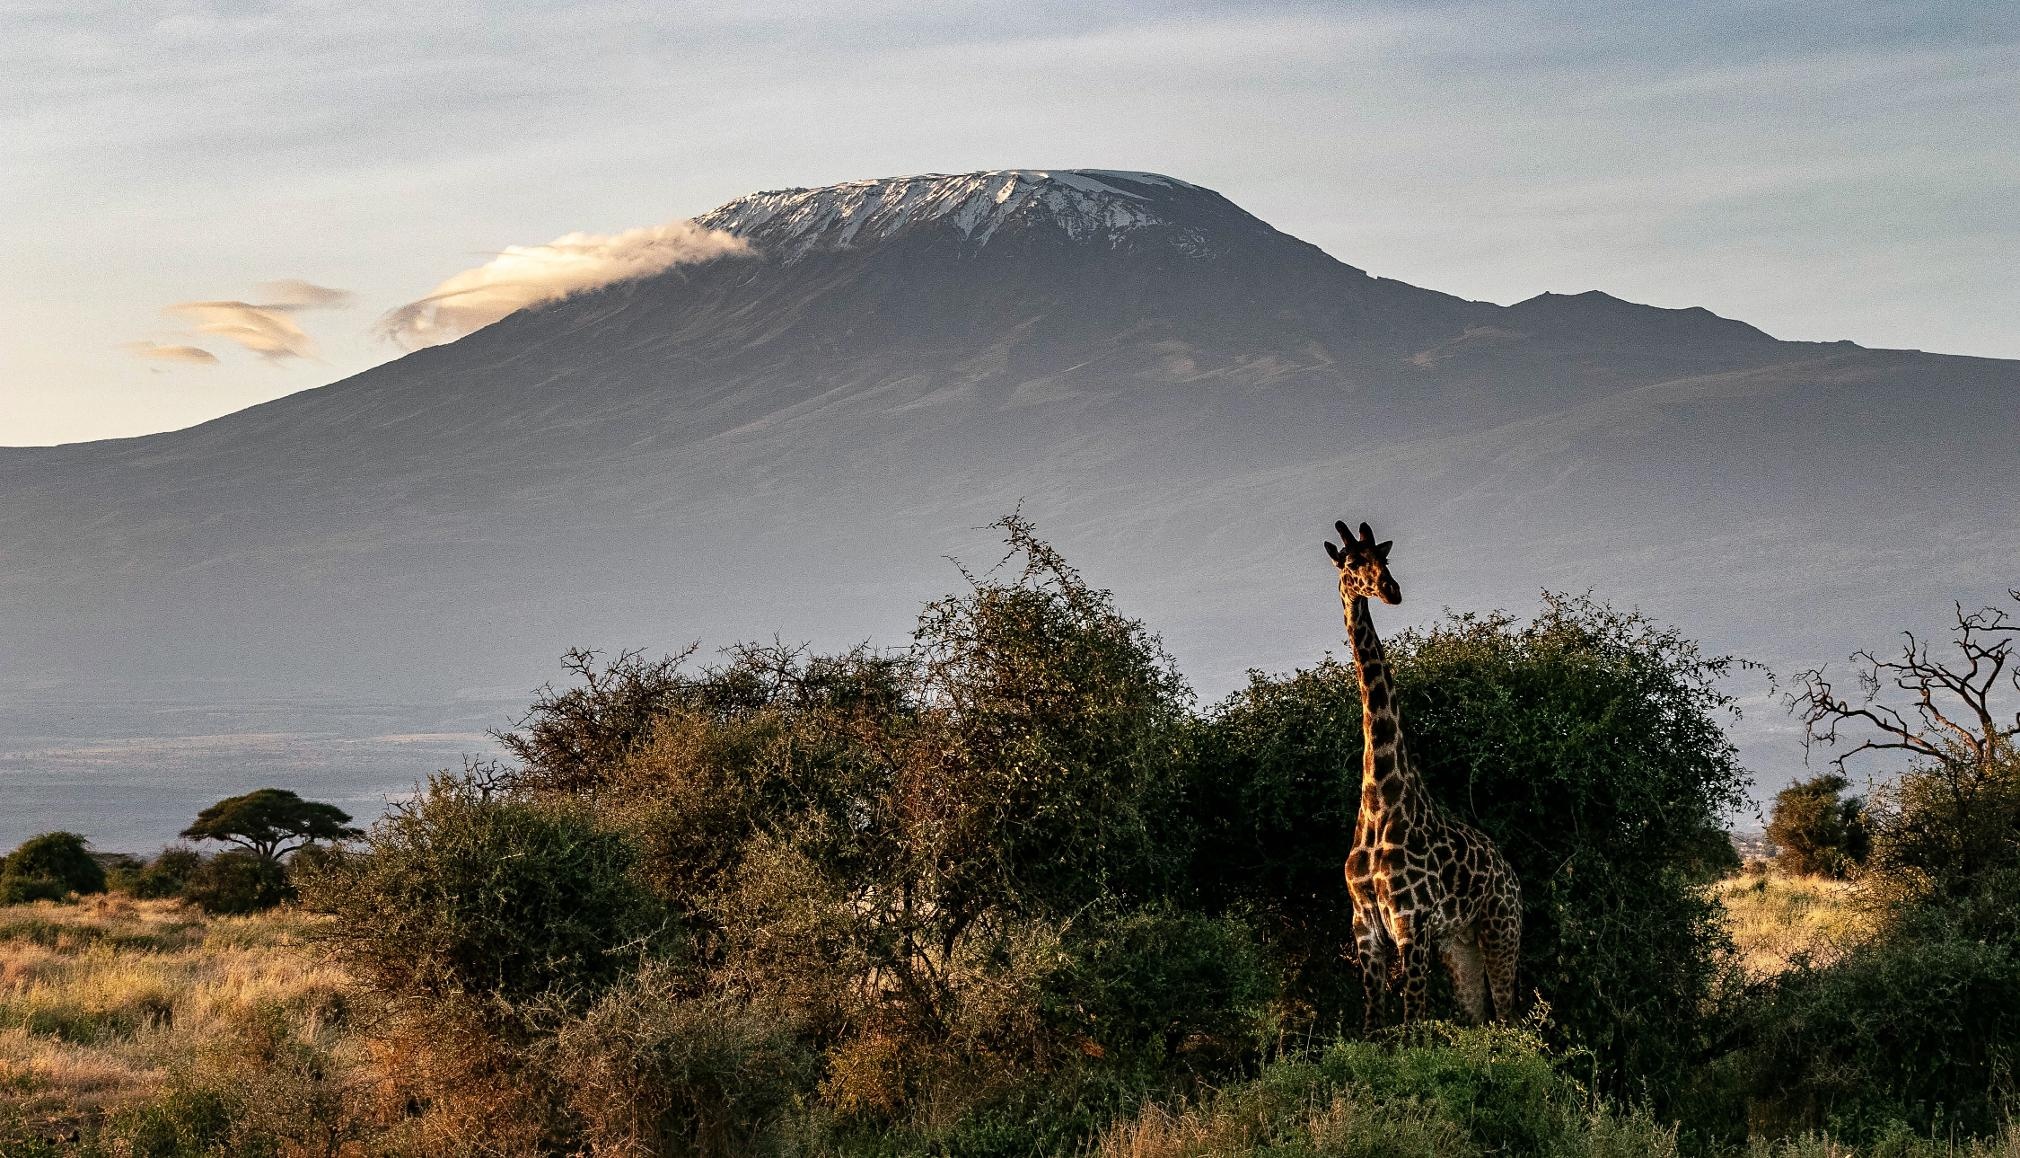 Savannenlandschaft mit hoher Wiese. Vereinzelt sind Bäume und Sträucher zu sehen, auch eine Giraffe. Im Hintergrund ragt der Kegel des Kilimandscharo in die Höhe. Der Gipfel ist weiß von Schnee.  © Pixaby